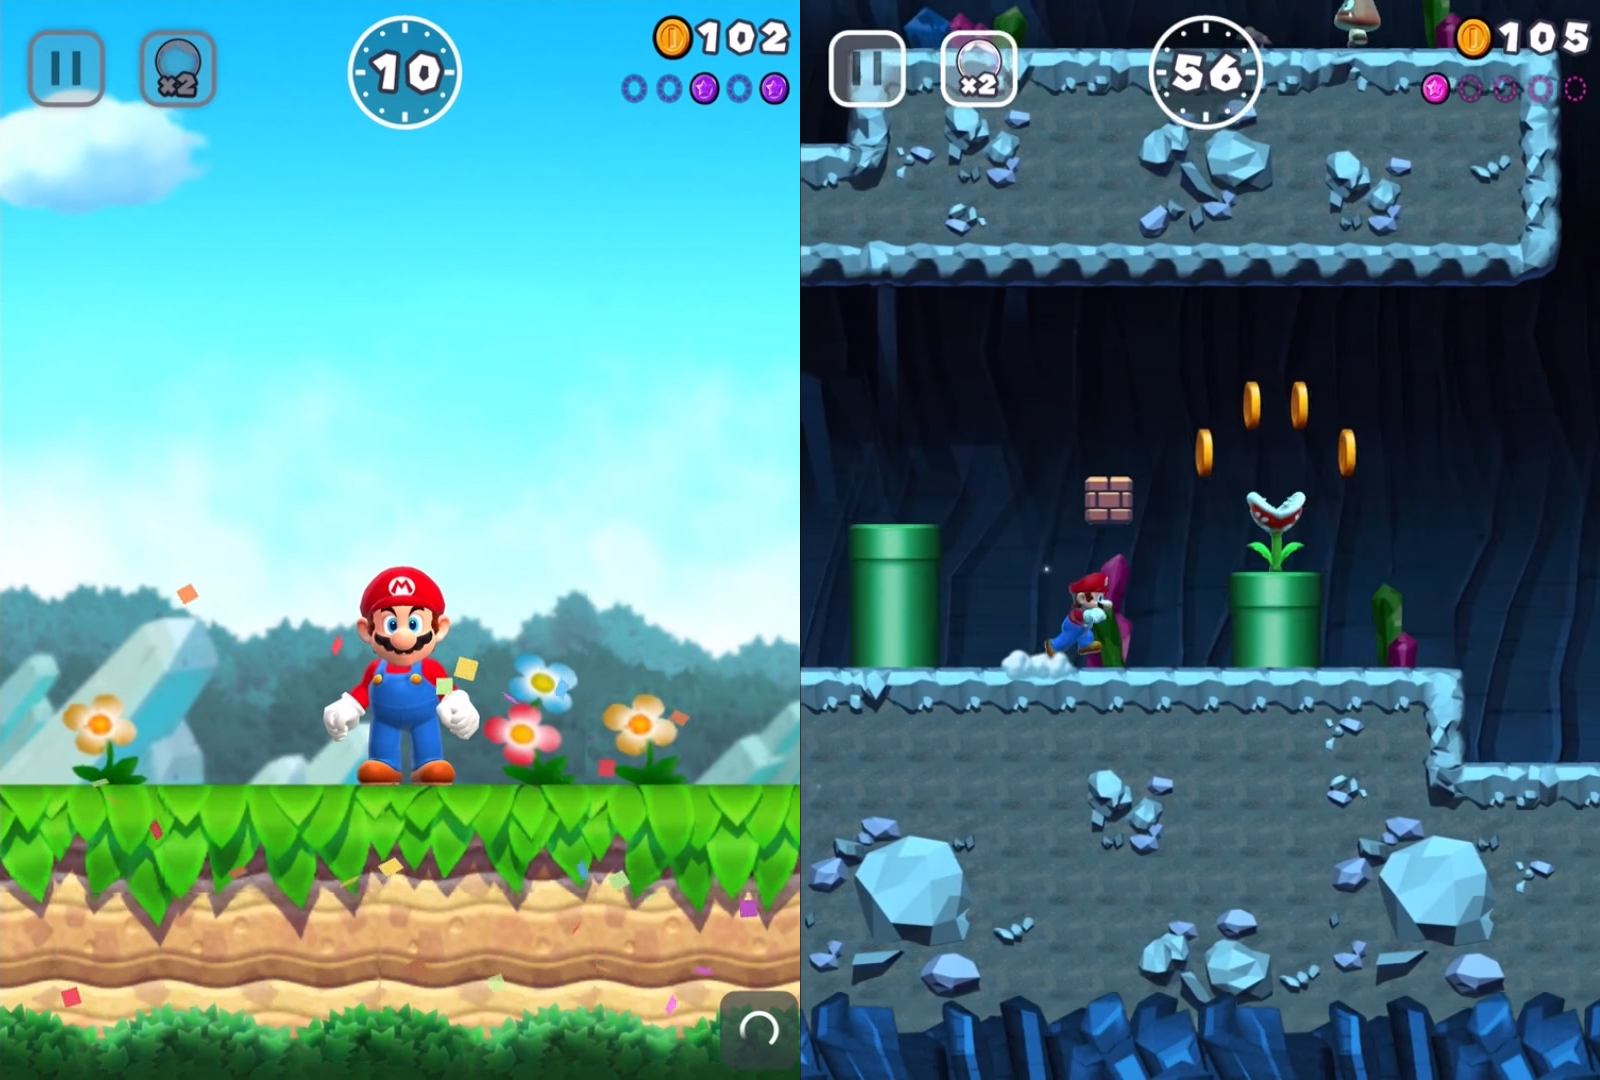 Super Mario Run je prva mobilna igra, ne samo za Nintendo, već i za Super Mario serijal. Igra je ponovno u 2D obliku, a igračeva jedina zadaća je dodirivanje ekrana nakon čega Super Mario skače. Nije potrebno pritiskati neku tipku za trčanje, što pak također znači da se Mario u niti jednom trenu ne može ručno zaustaviti. Stoga je iznimno važno reagirati na vrijeme i biti vrlo precizan, kako bi Mario preskočio sve prepreke.